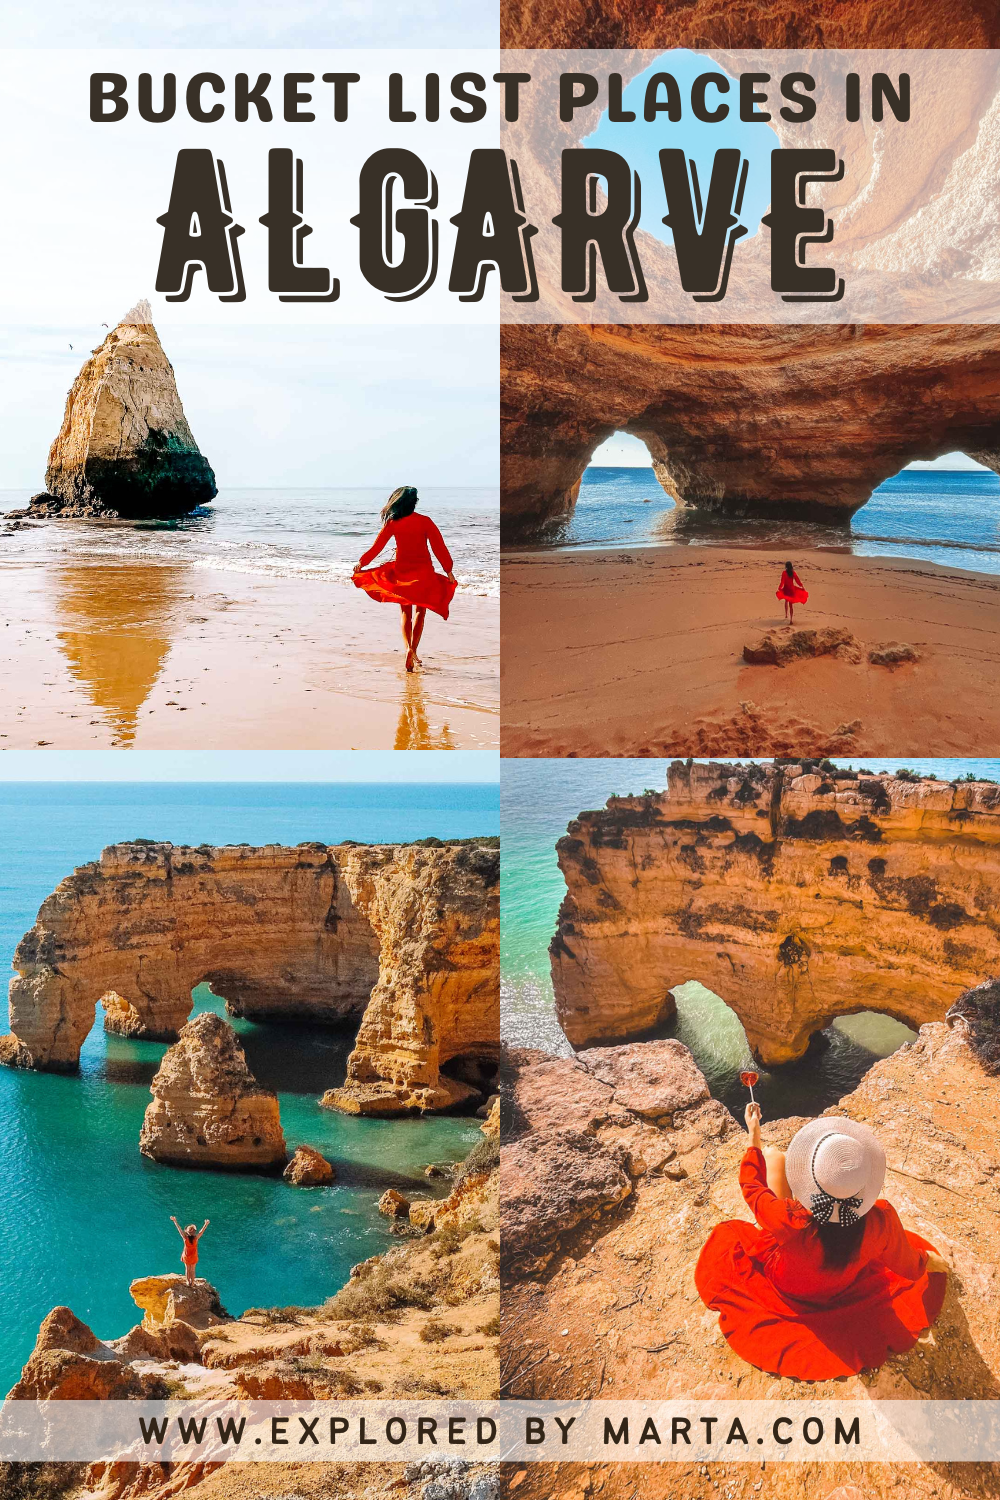 Ultimate Algarve bucket list - best things to do in Algarve, Portugal